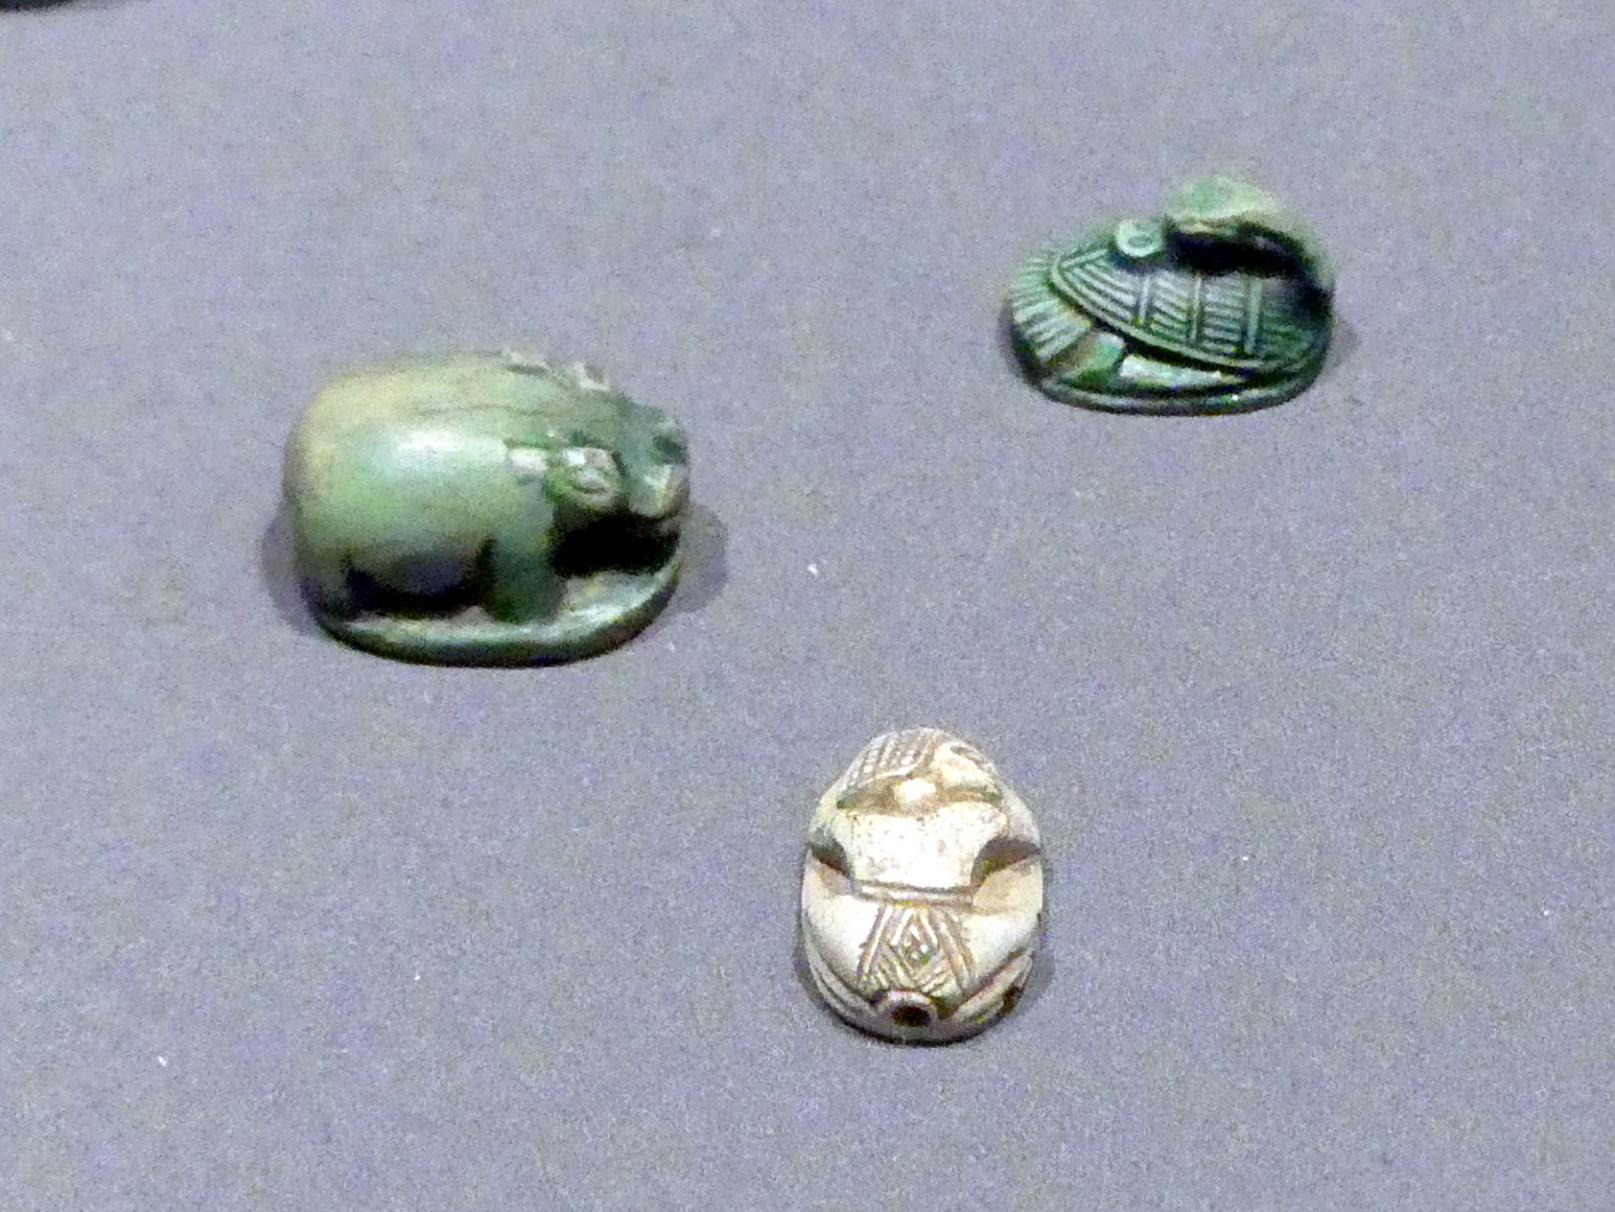 Skaraboiden als Nilpferd, Ente, Mensch, 18. Dynastie, 1210 - 966 v. Chr., 1400 - 1350 v. Chr.